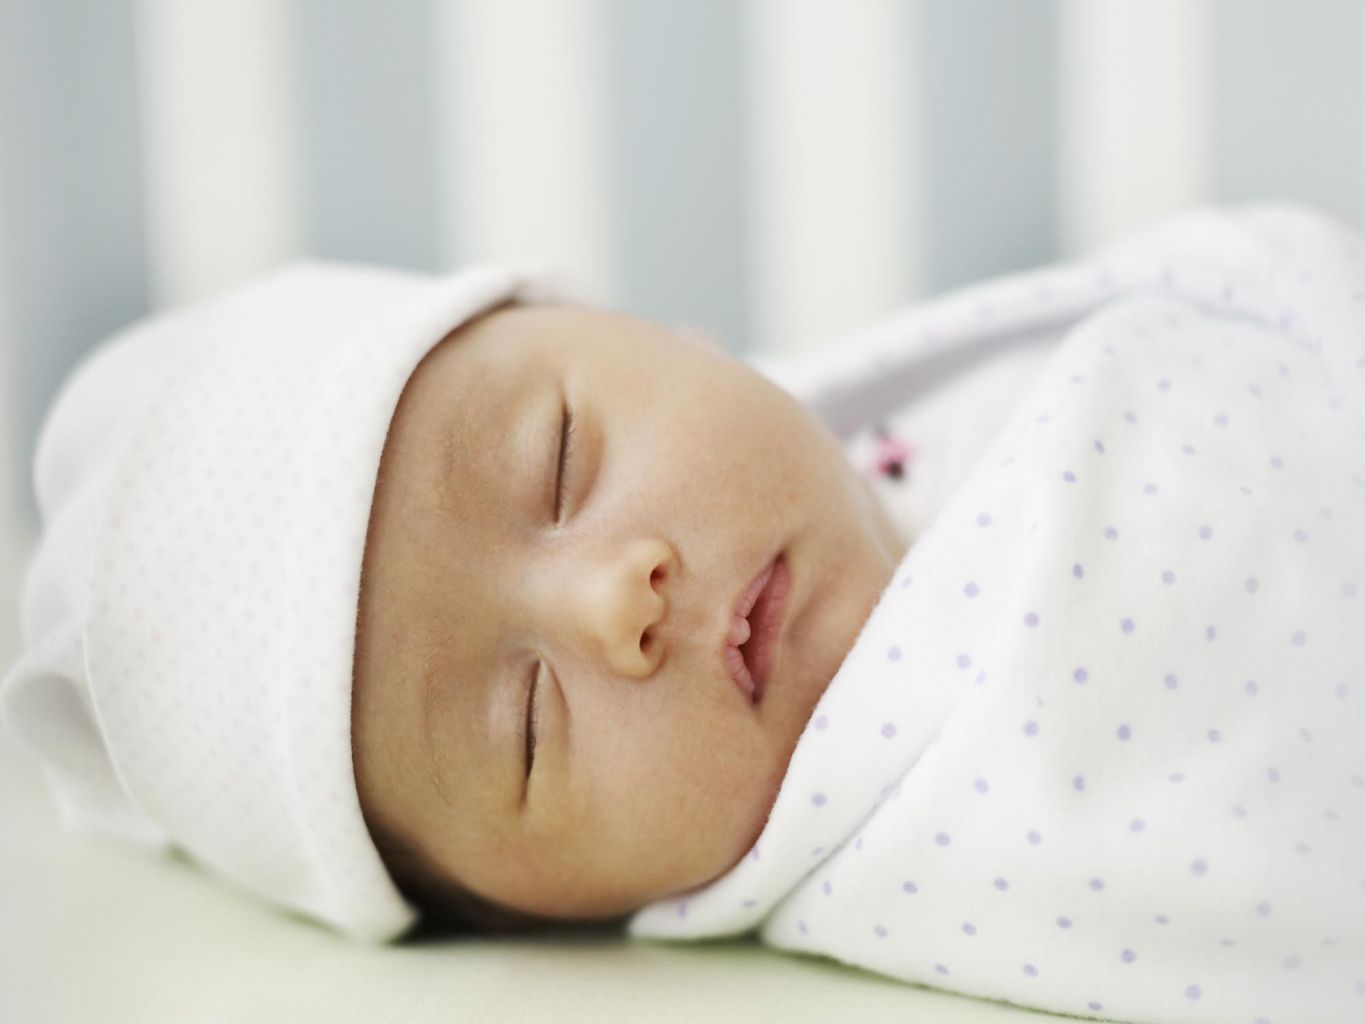 Nhịp thở của trẻ khi ngủ sẽ chậm lại so với khi thức